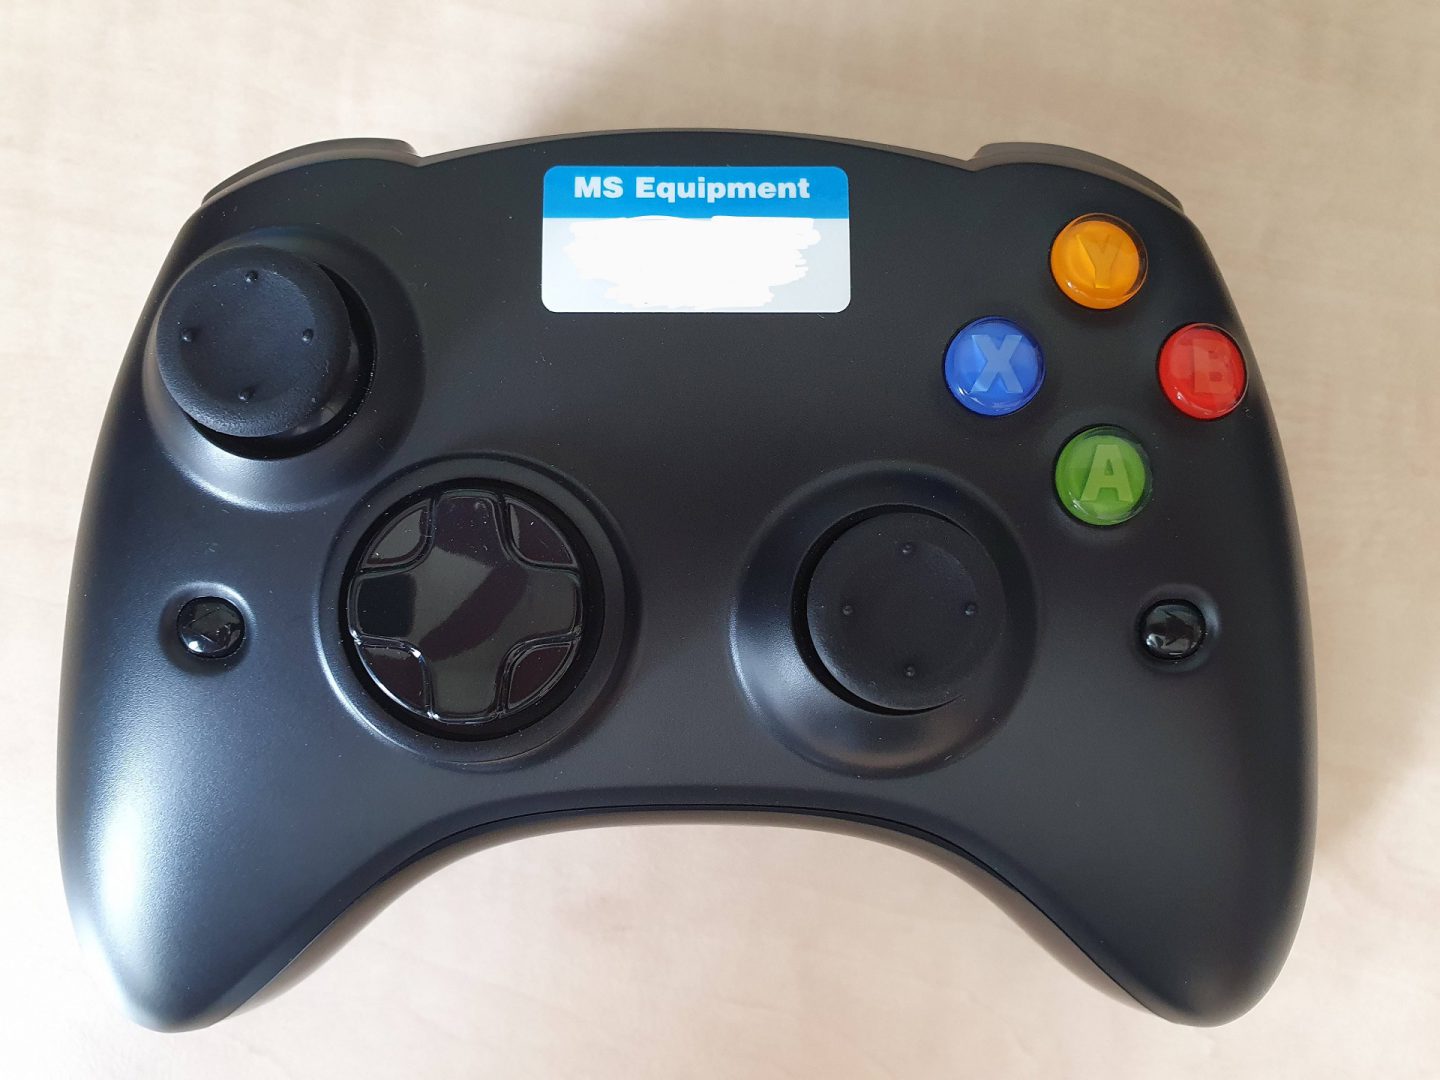 Así era uno de los primeros prototipos del mando de Xbox One - Os mostramos uno de los prototipos que precedieron al mando original de Xbox One, muy en la línea de Xbox 360.